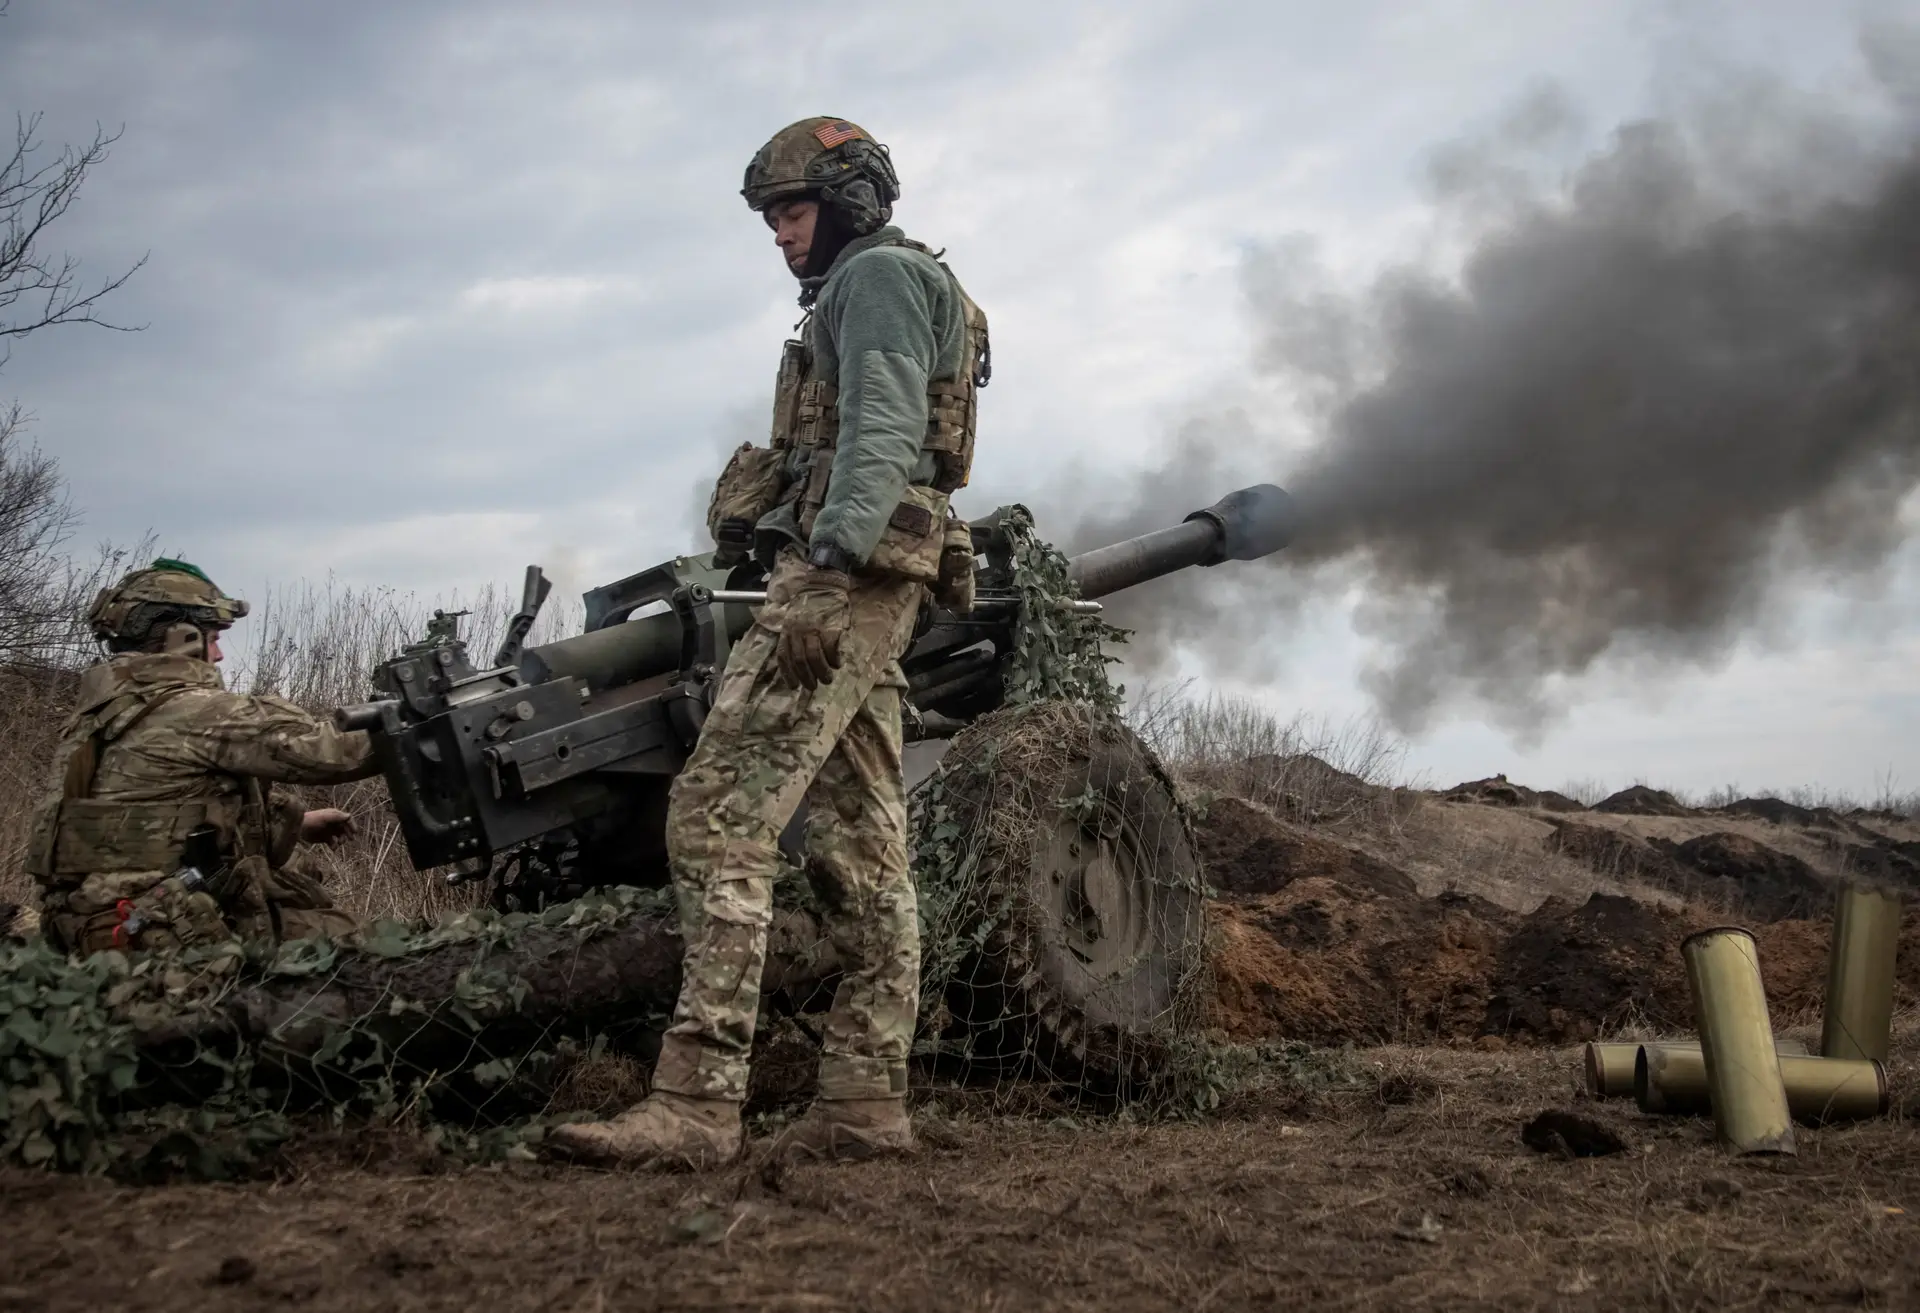 Autoridades russas cometeram crimes de guerra na Ucrânia, acusa ONU